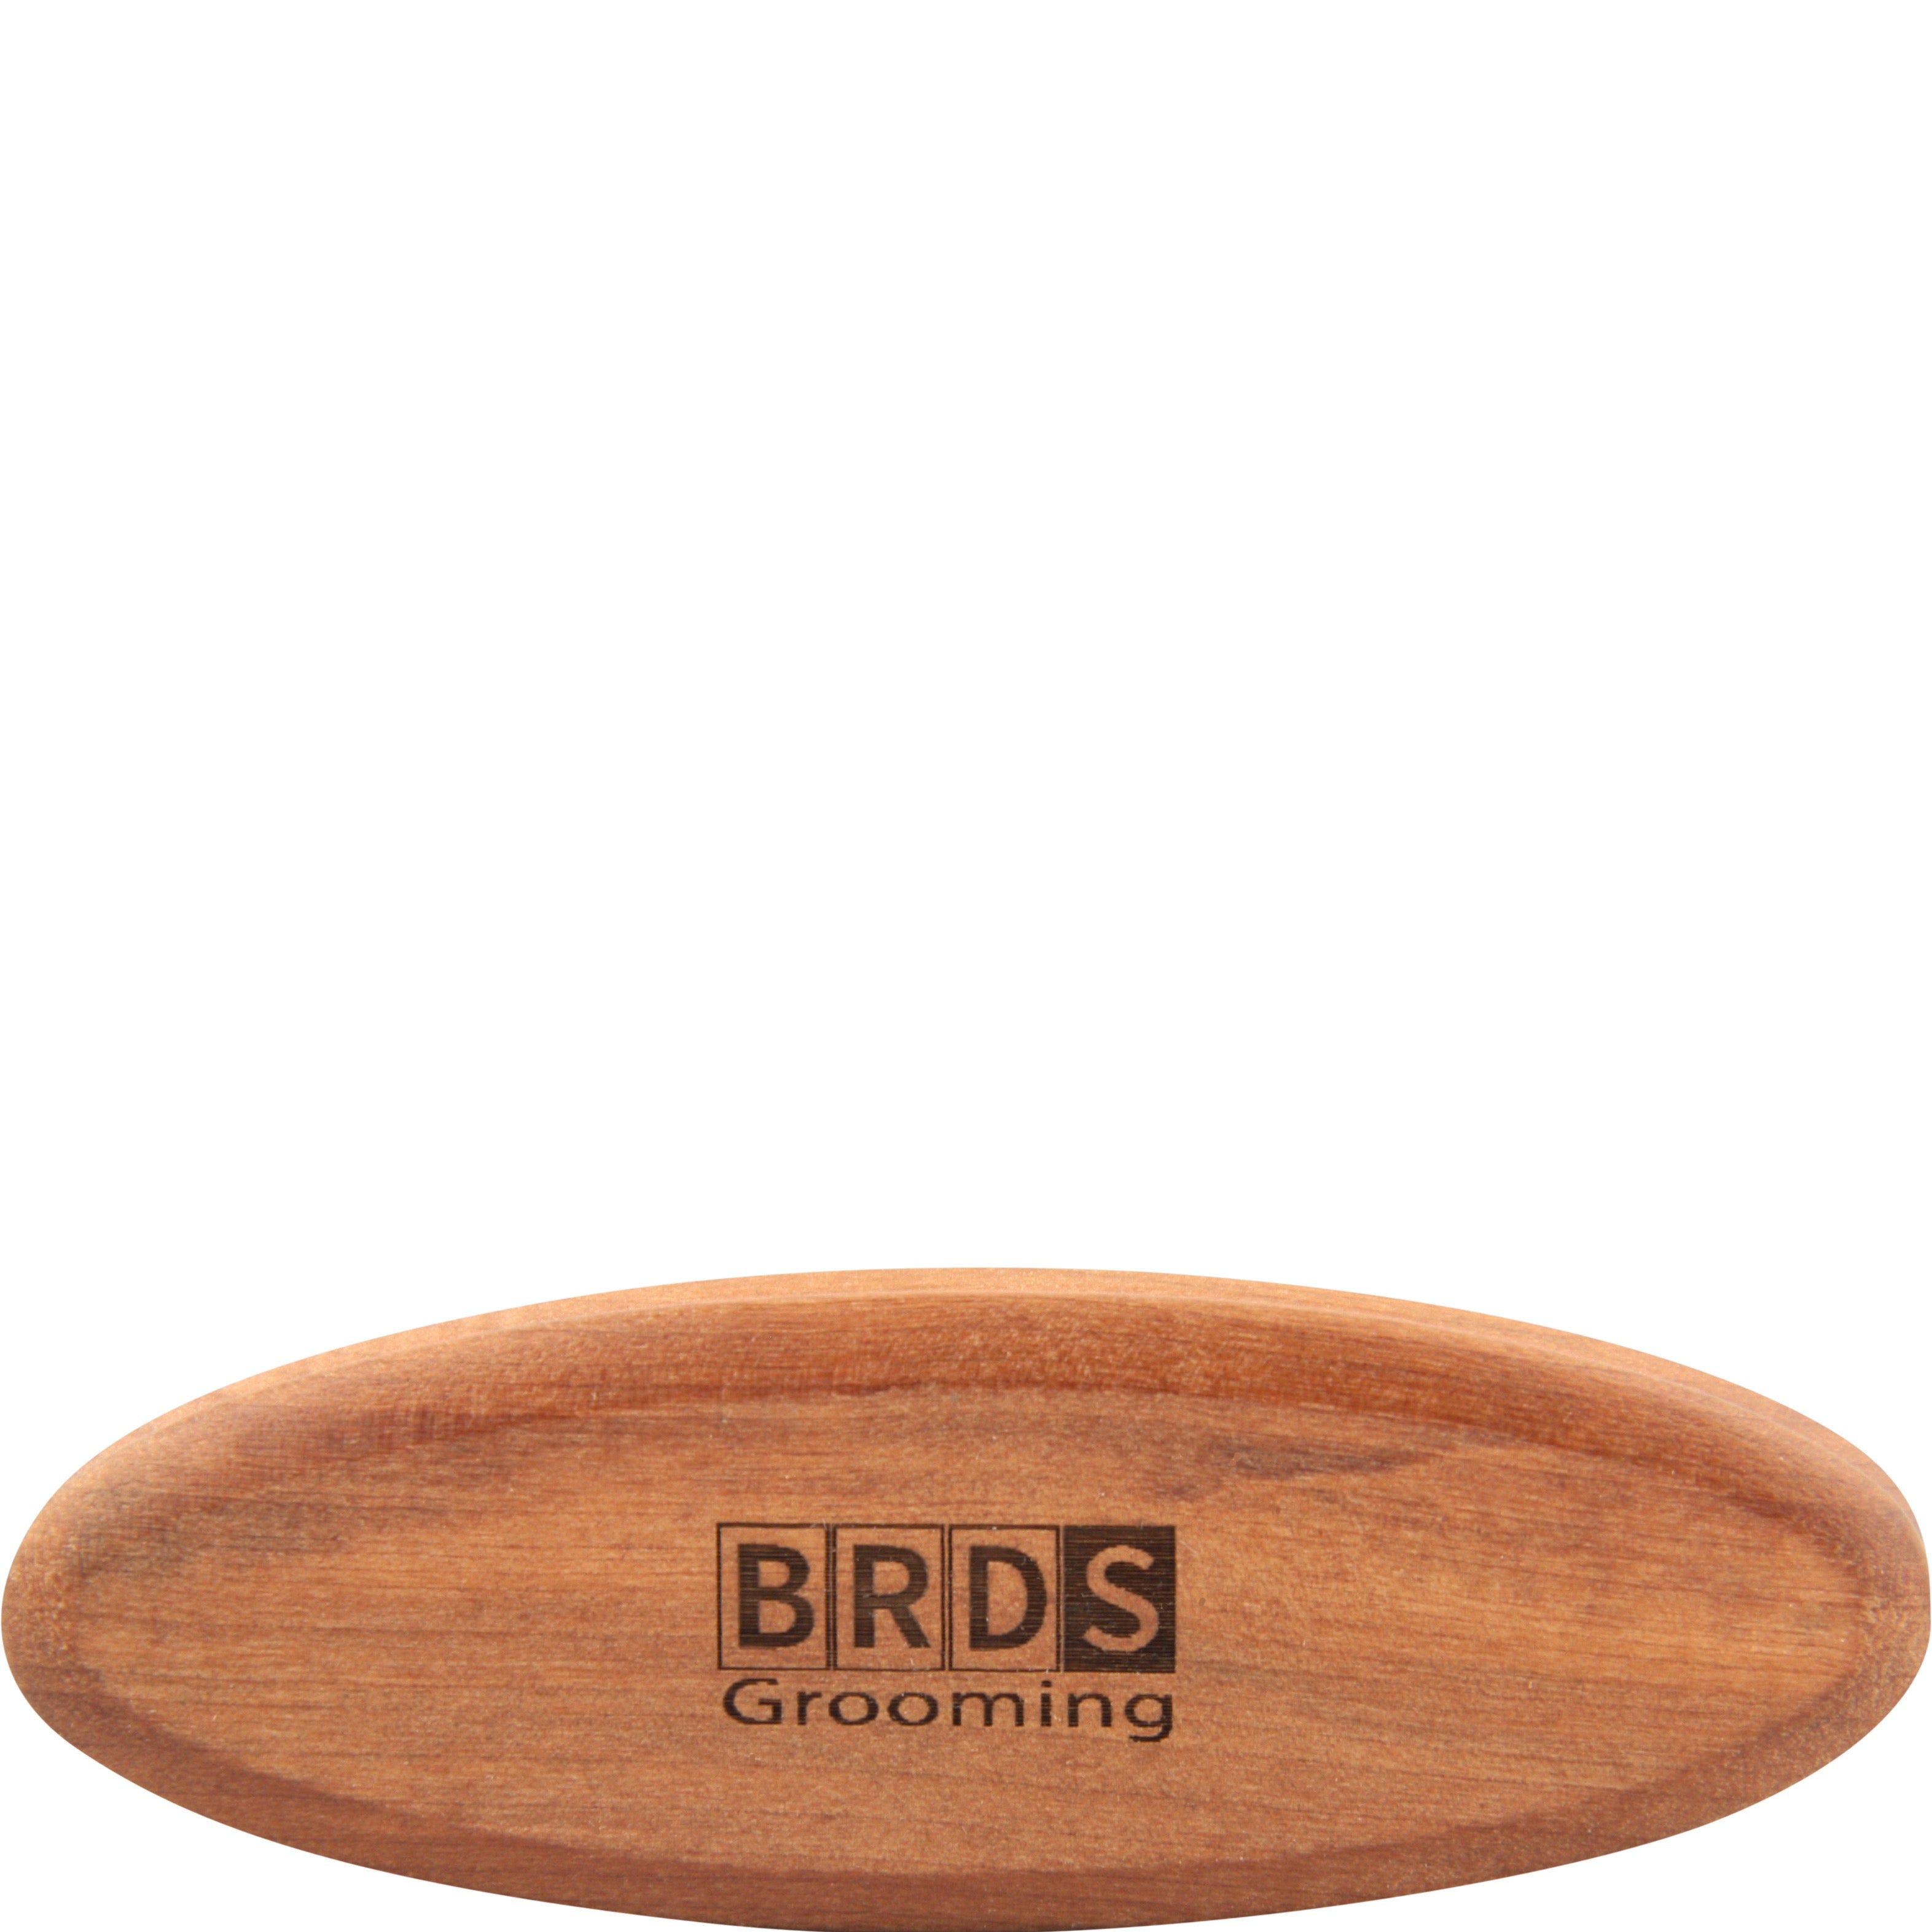 Beards Grooming Beard Brush (Small) - Wild Boar Hair